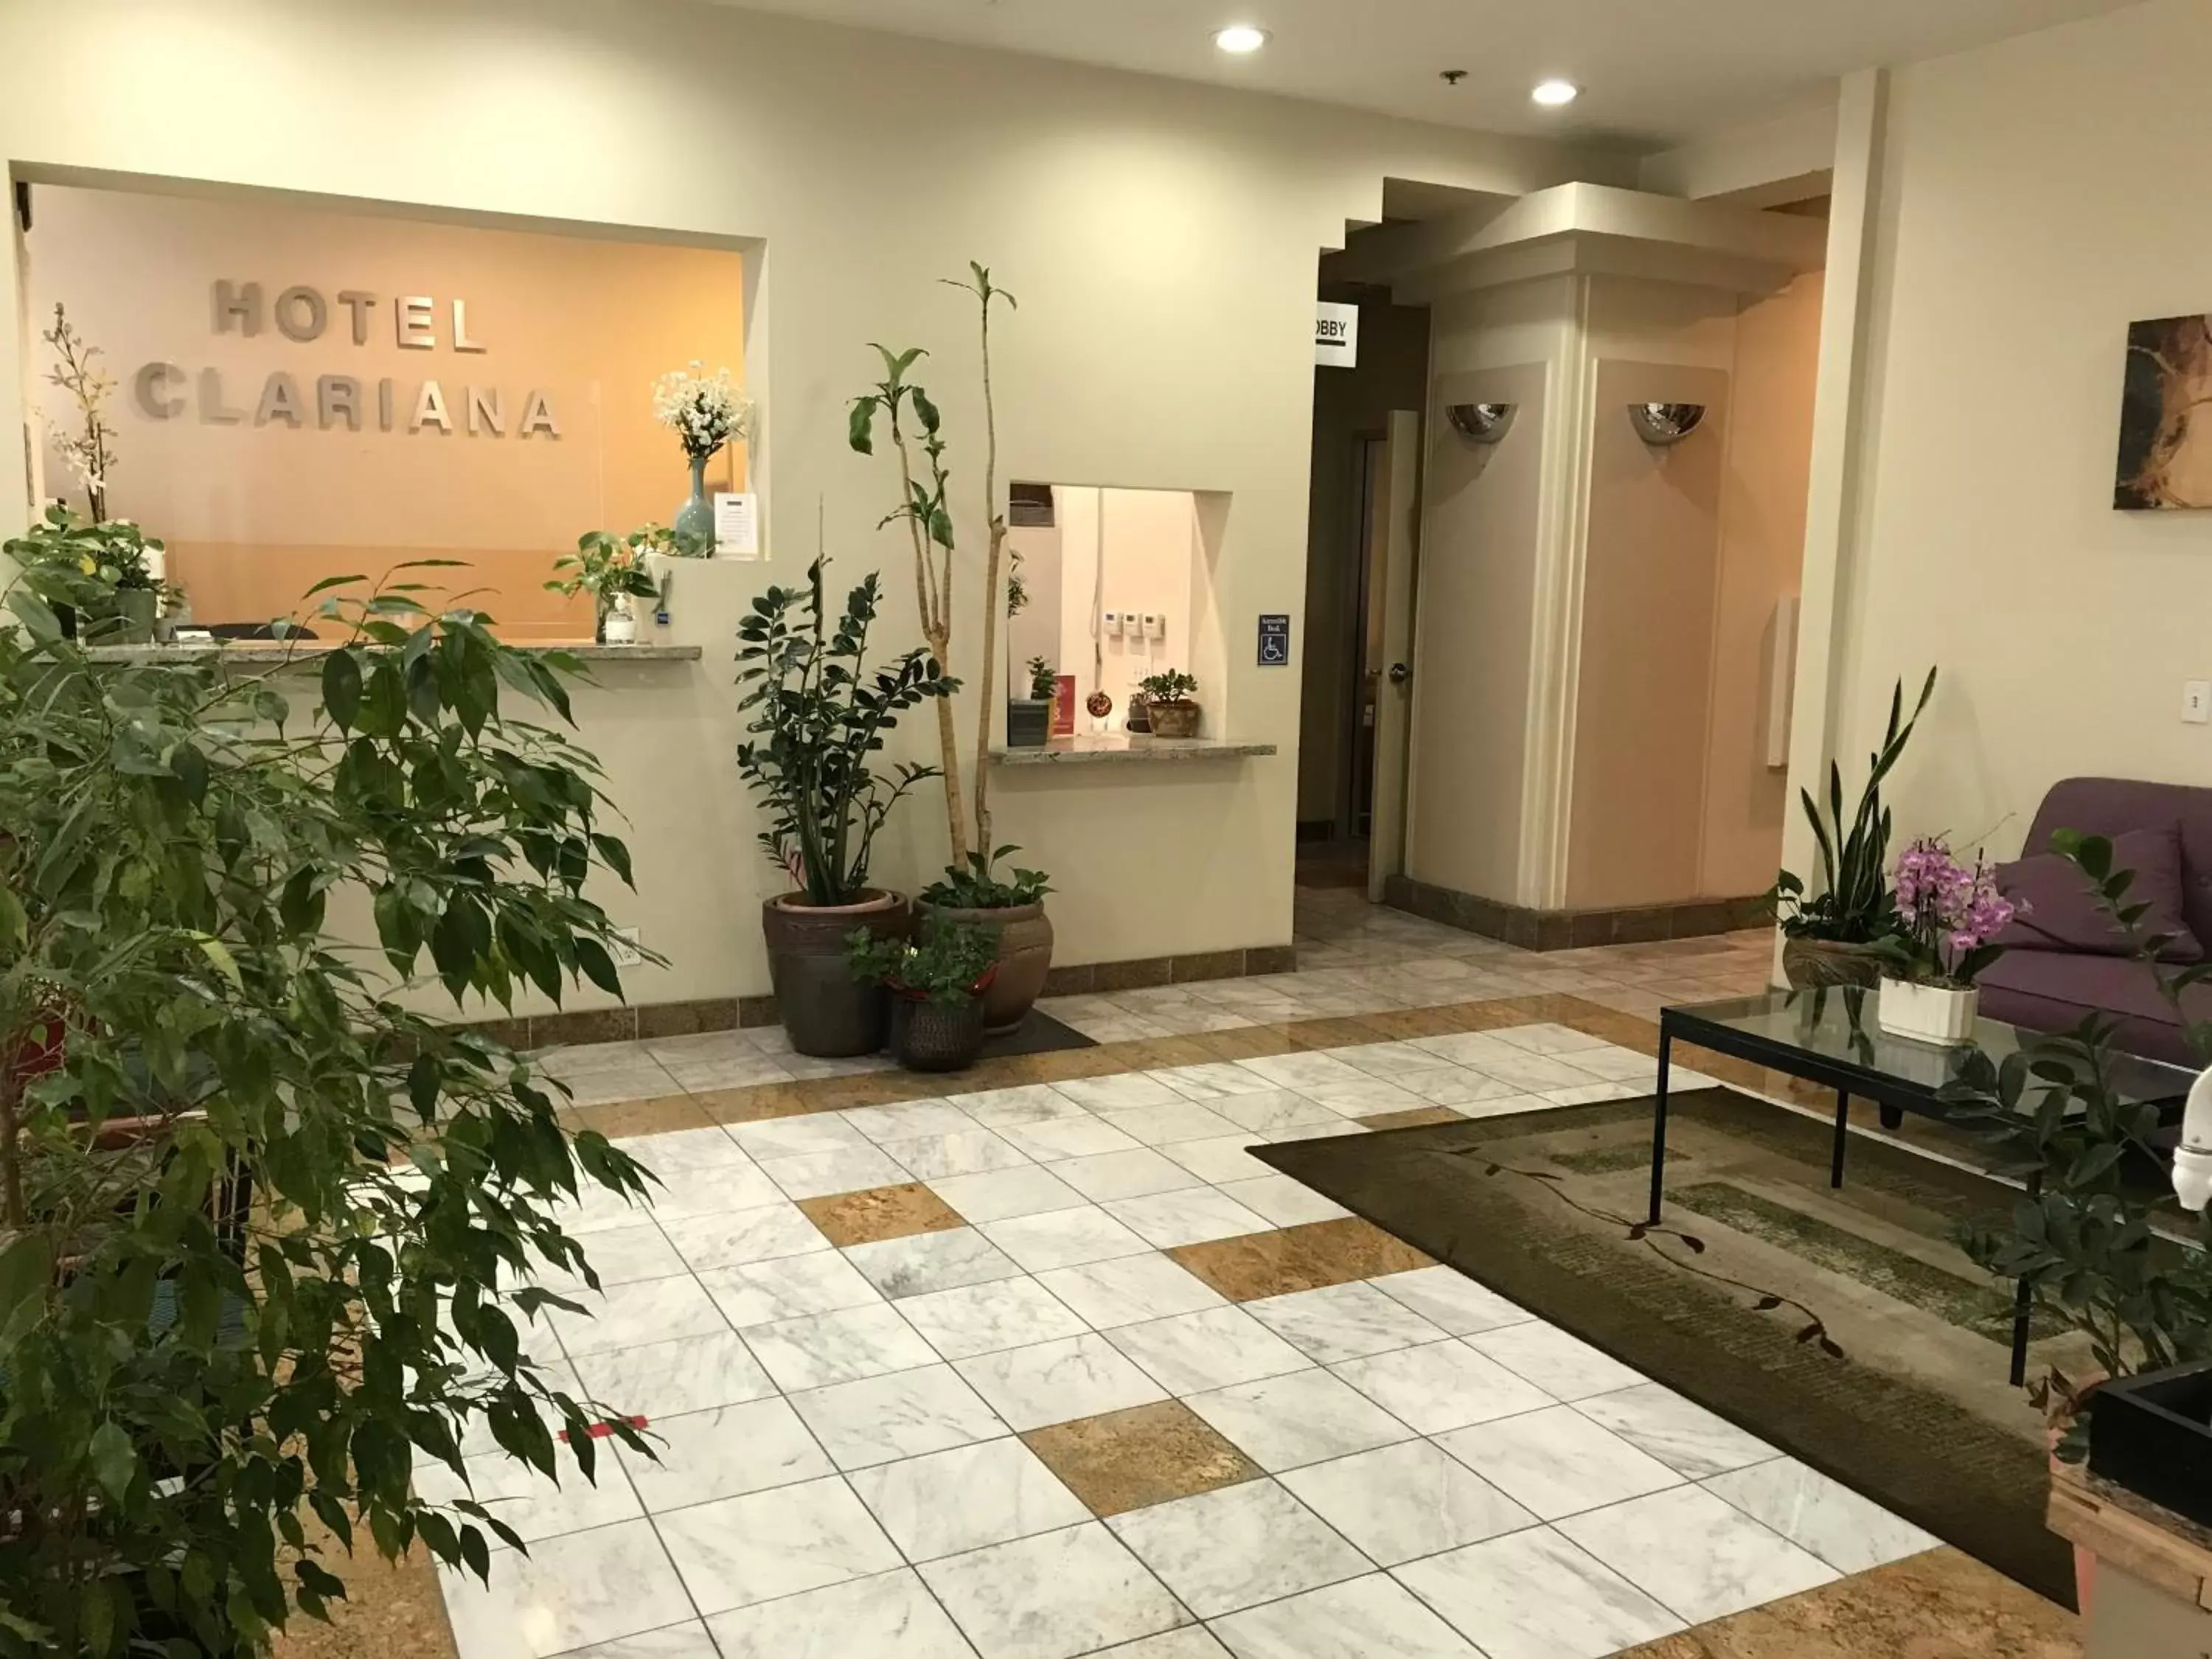 Lobby or reception, Lobby/Reception in Hotel Clariana